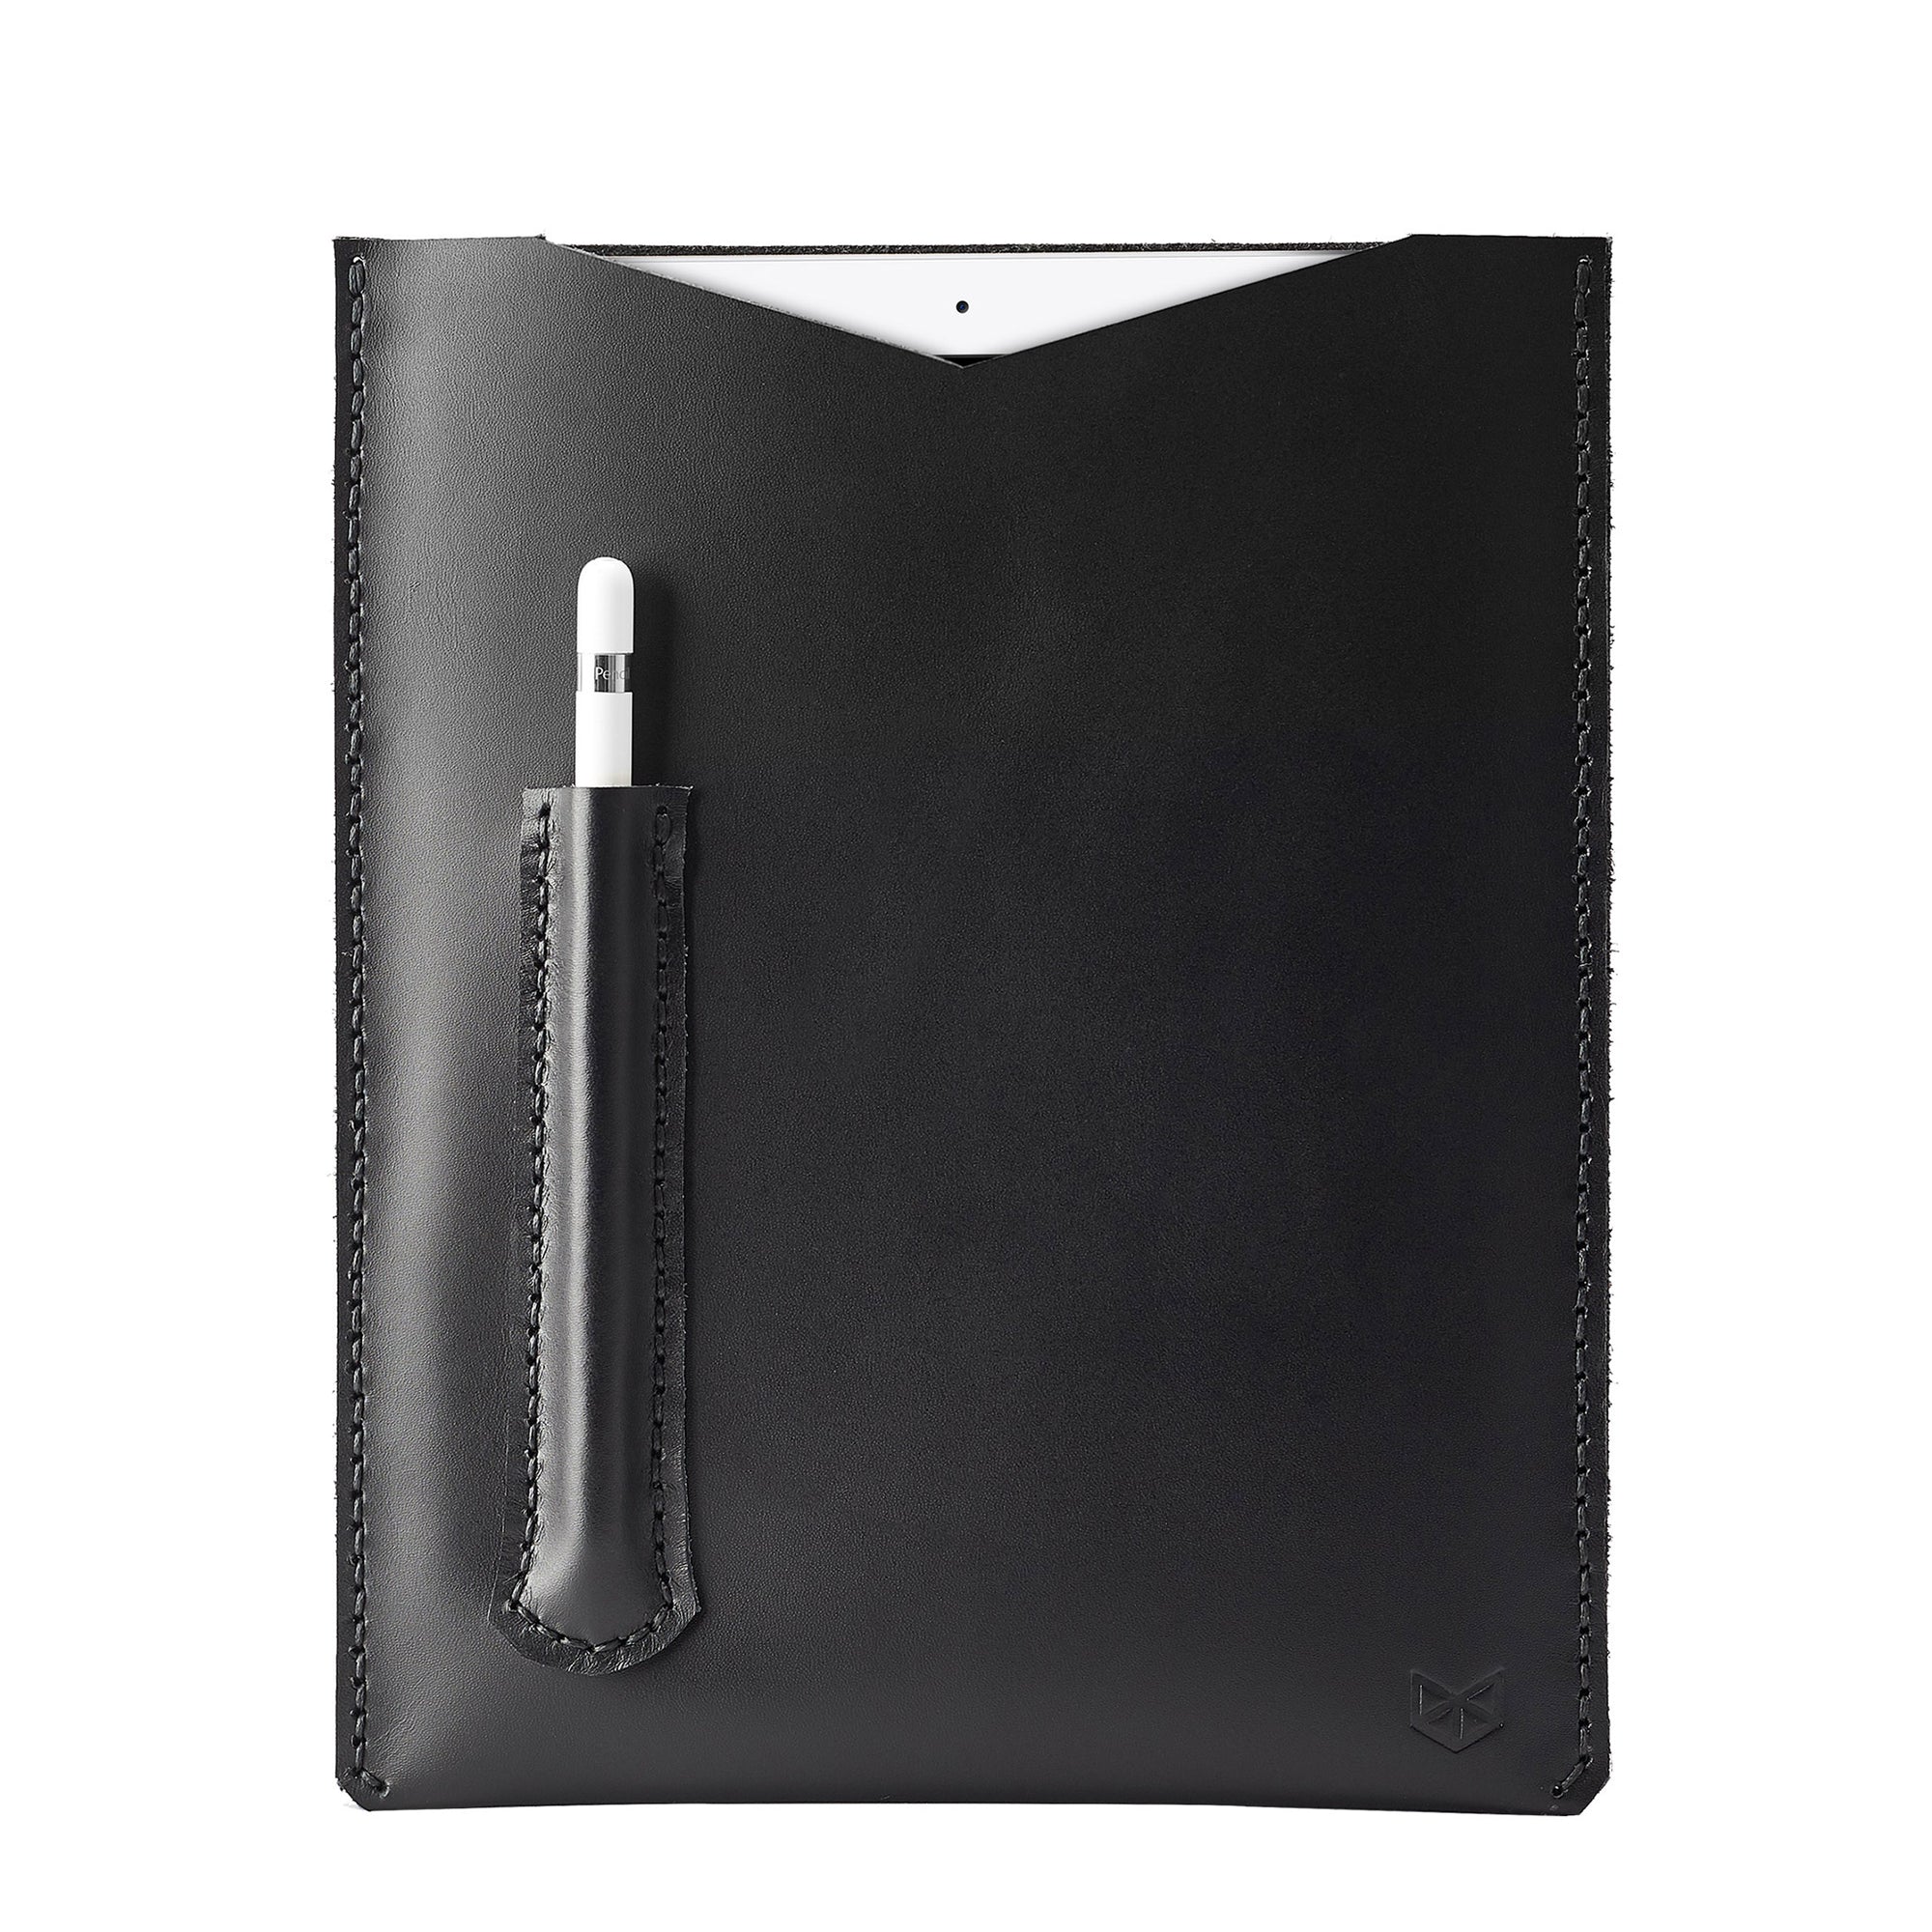 Capra Leather iPad pro leather sleeve. Black leather sleeve for iPad pro 10.5 inch 12.9 inch. Mens gifts